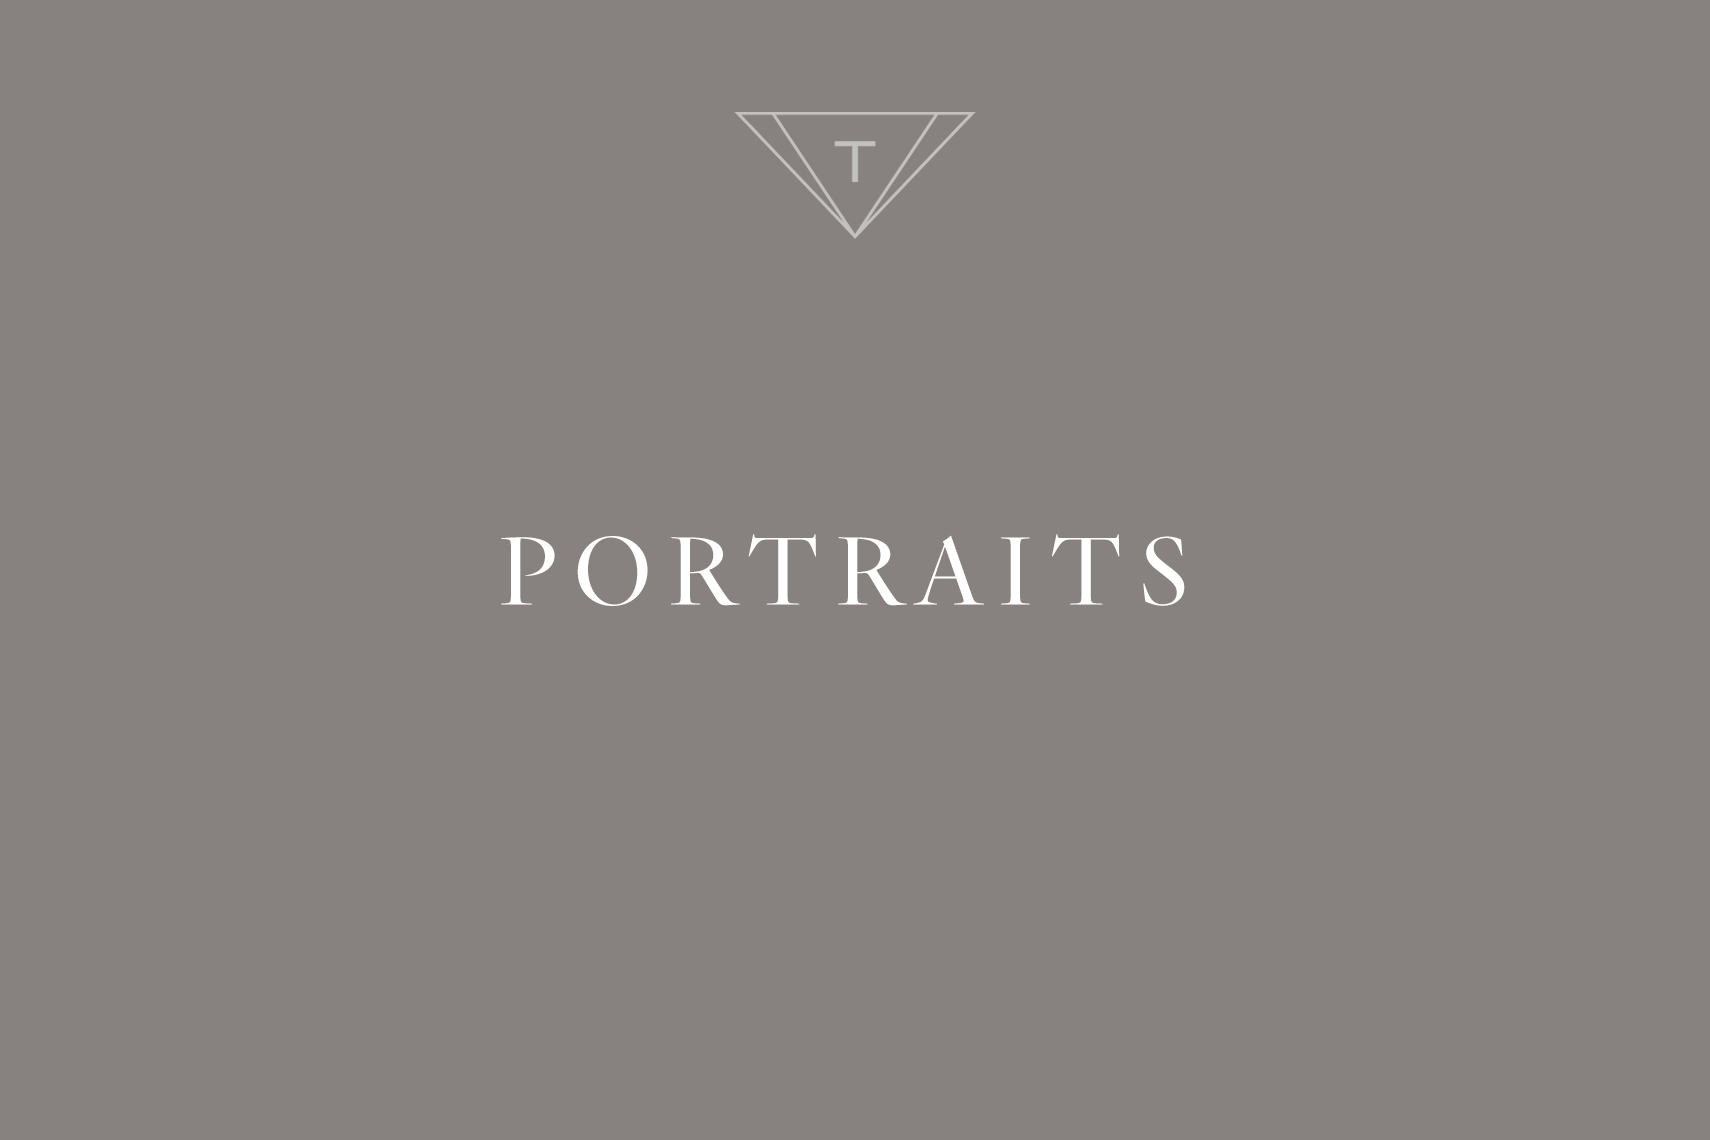 portraits_title